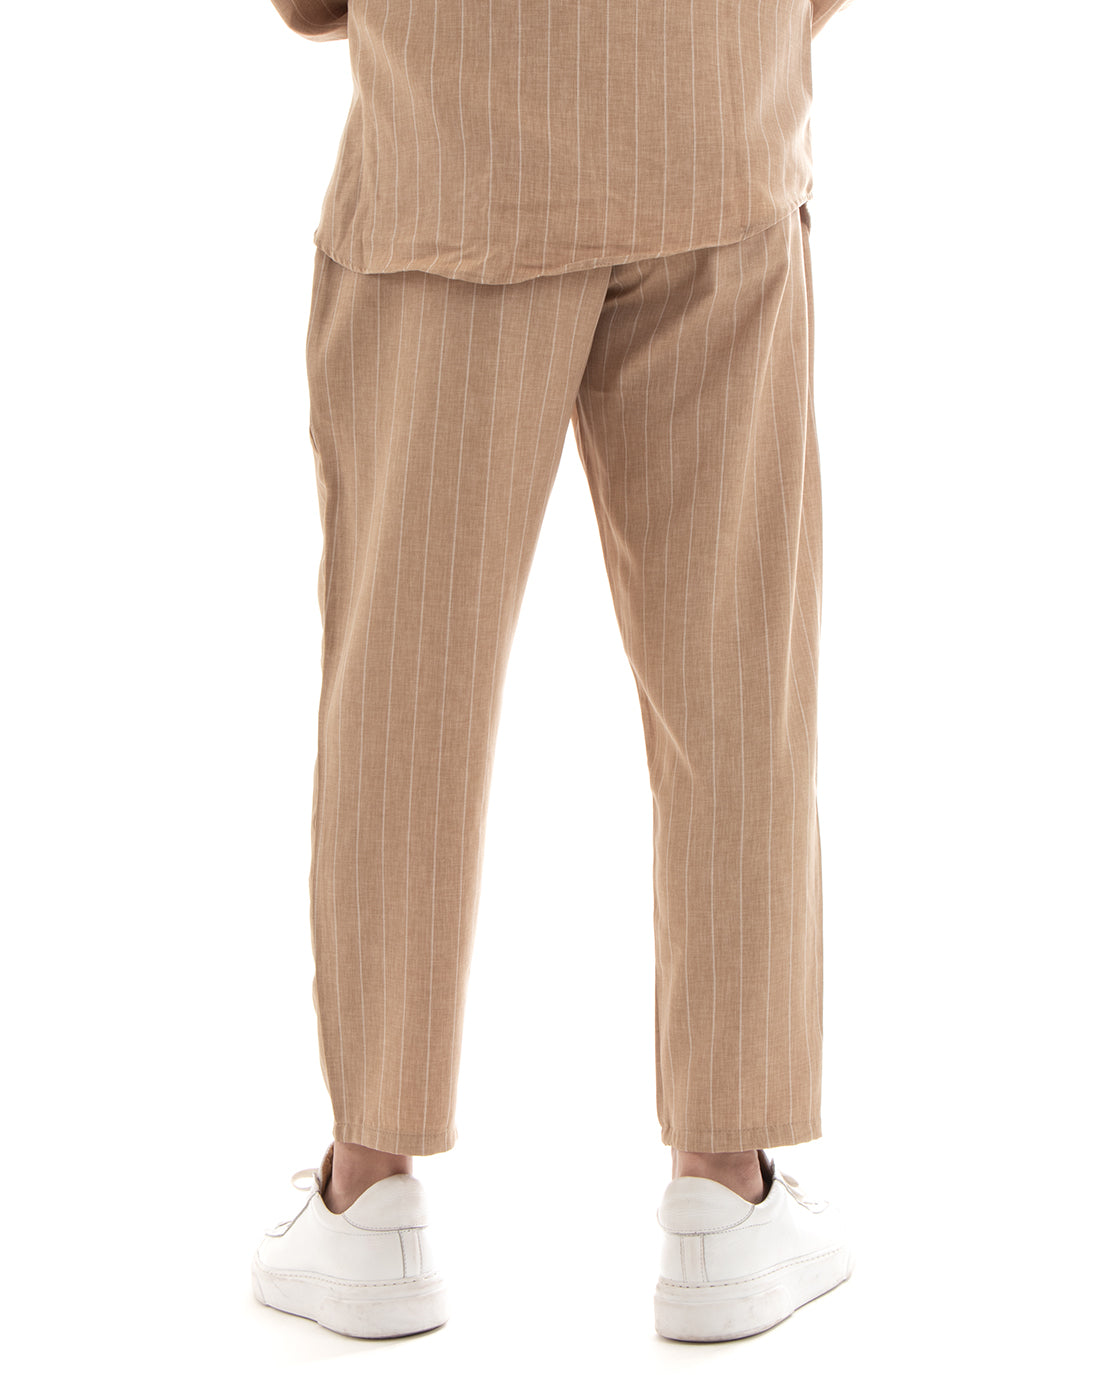 Completo Set Coordinato Uomo Viscosa Camicia Con Colletto Pantaloni Outfit Rigato Gessato Camel GIOSAL-OU2265A